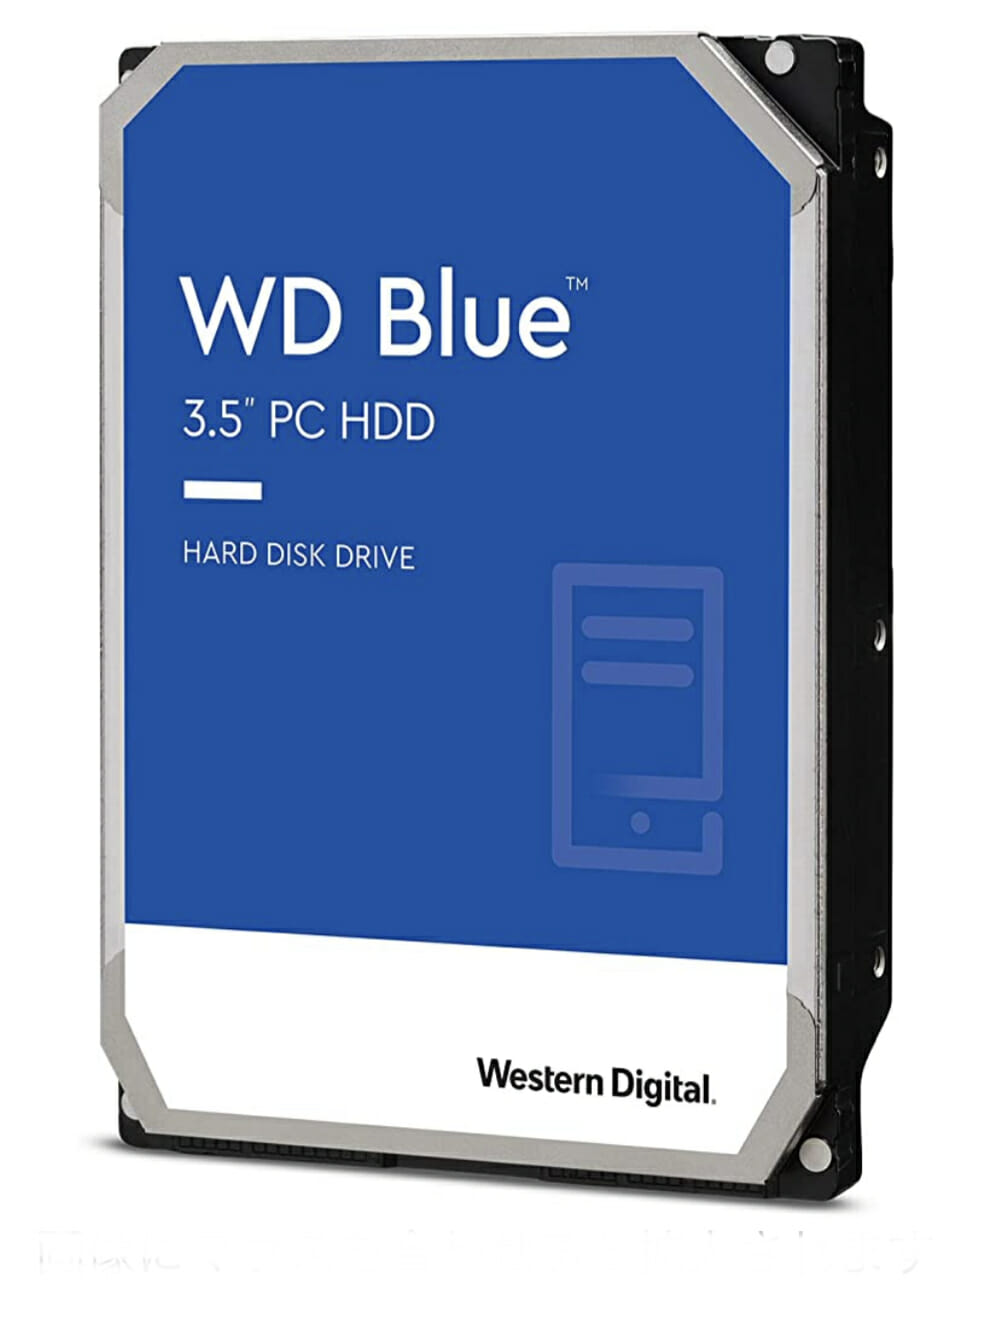 Ads –  Western Digital ウエスタンデジタル 内蔵 HDD 6TB WD Blue PC 3.5インチ WD60EZAZ-EC 【国内正規代理店品】 ID40022